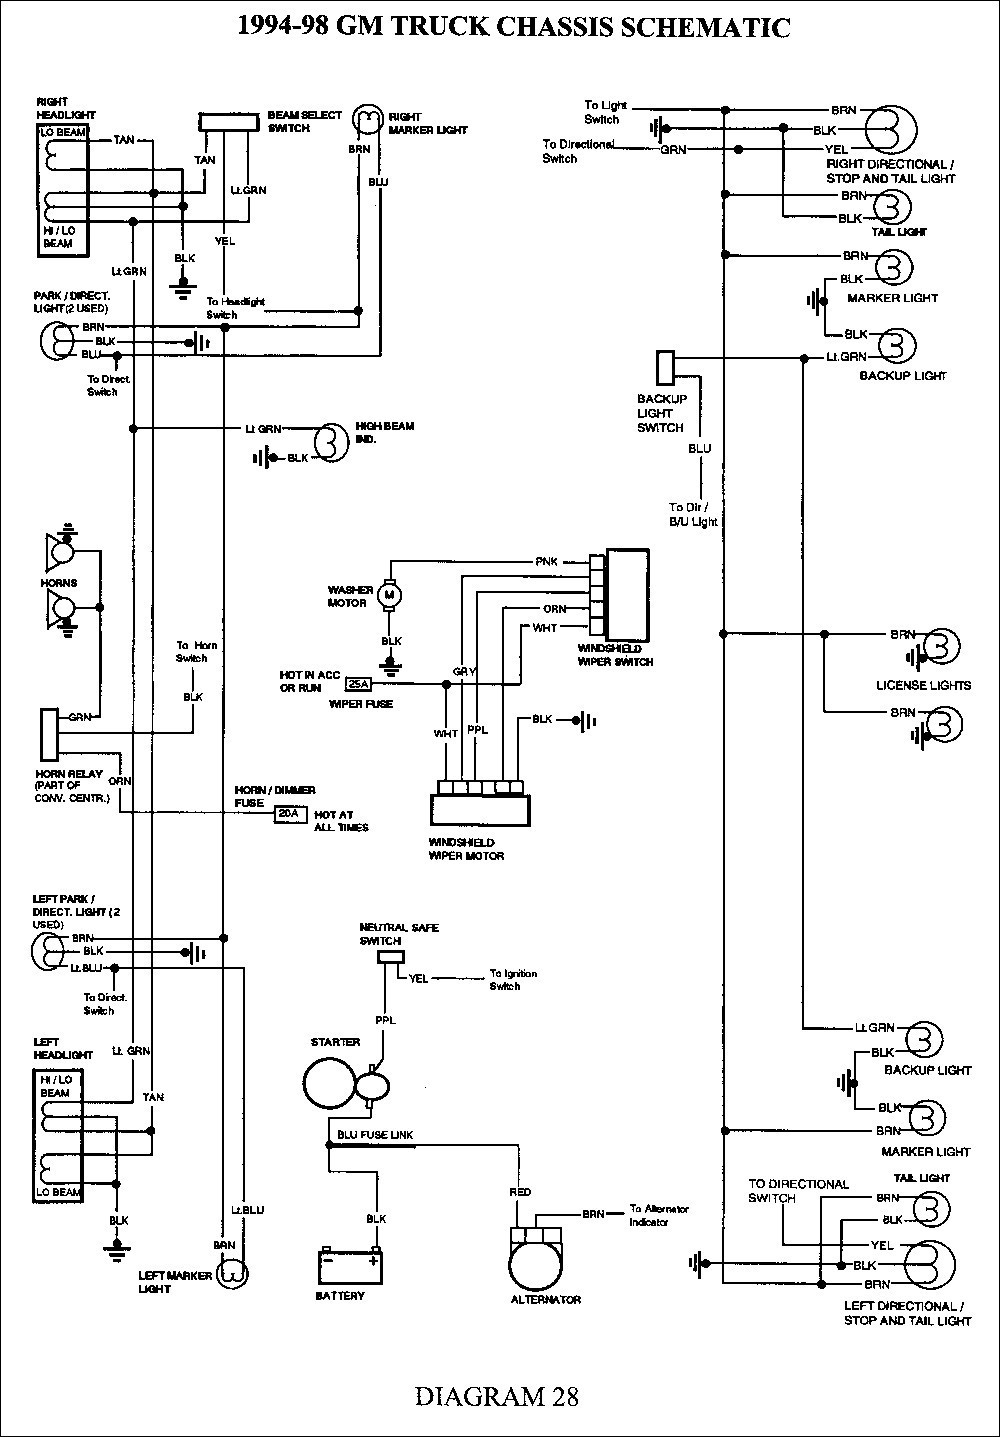 1997 S10 Turn Signal Wiring Diagram - Wiring Diagram